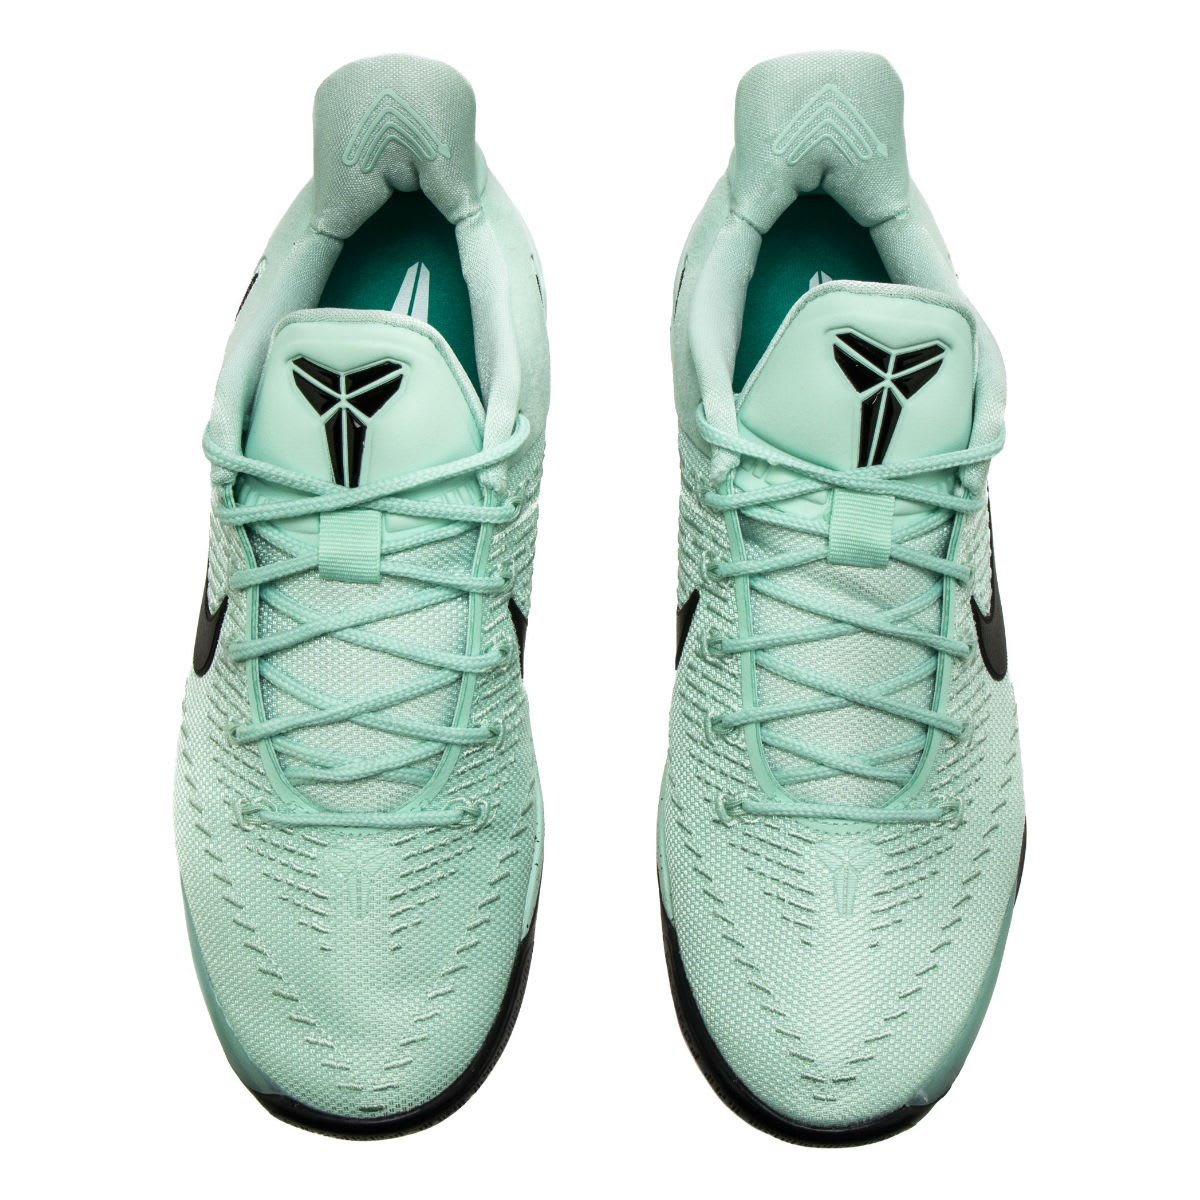 Nike Kobe A.D. Igloo Release Date Top 852425-300